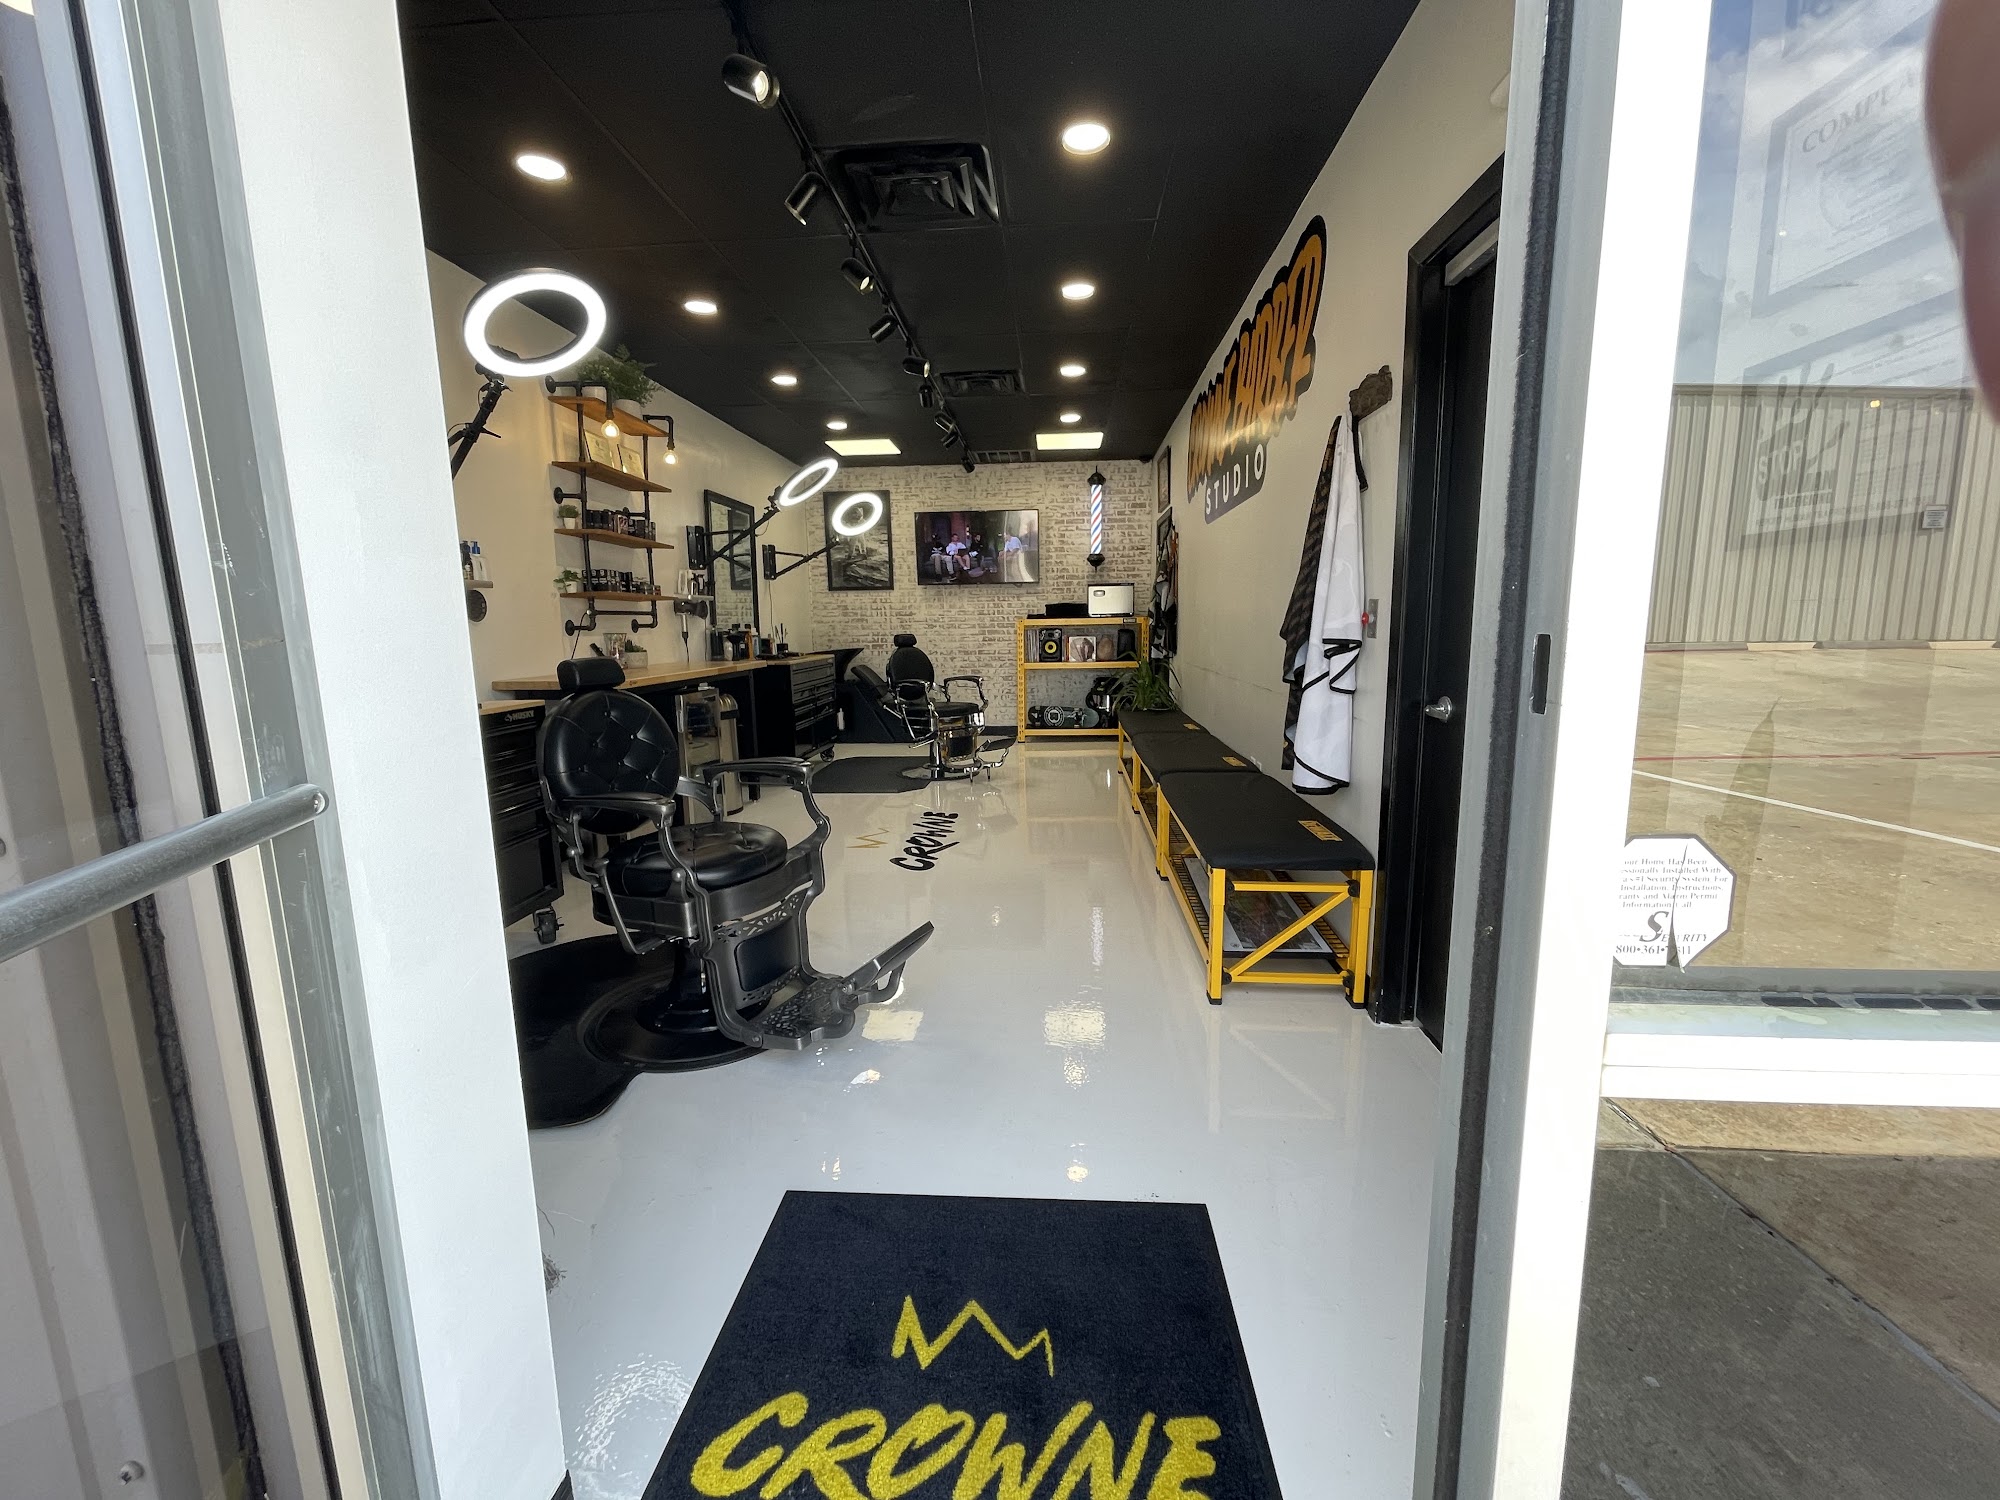 Crowne Barber Studio